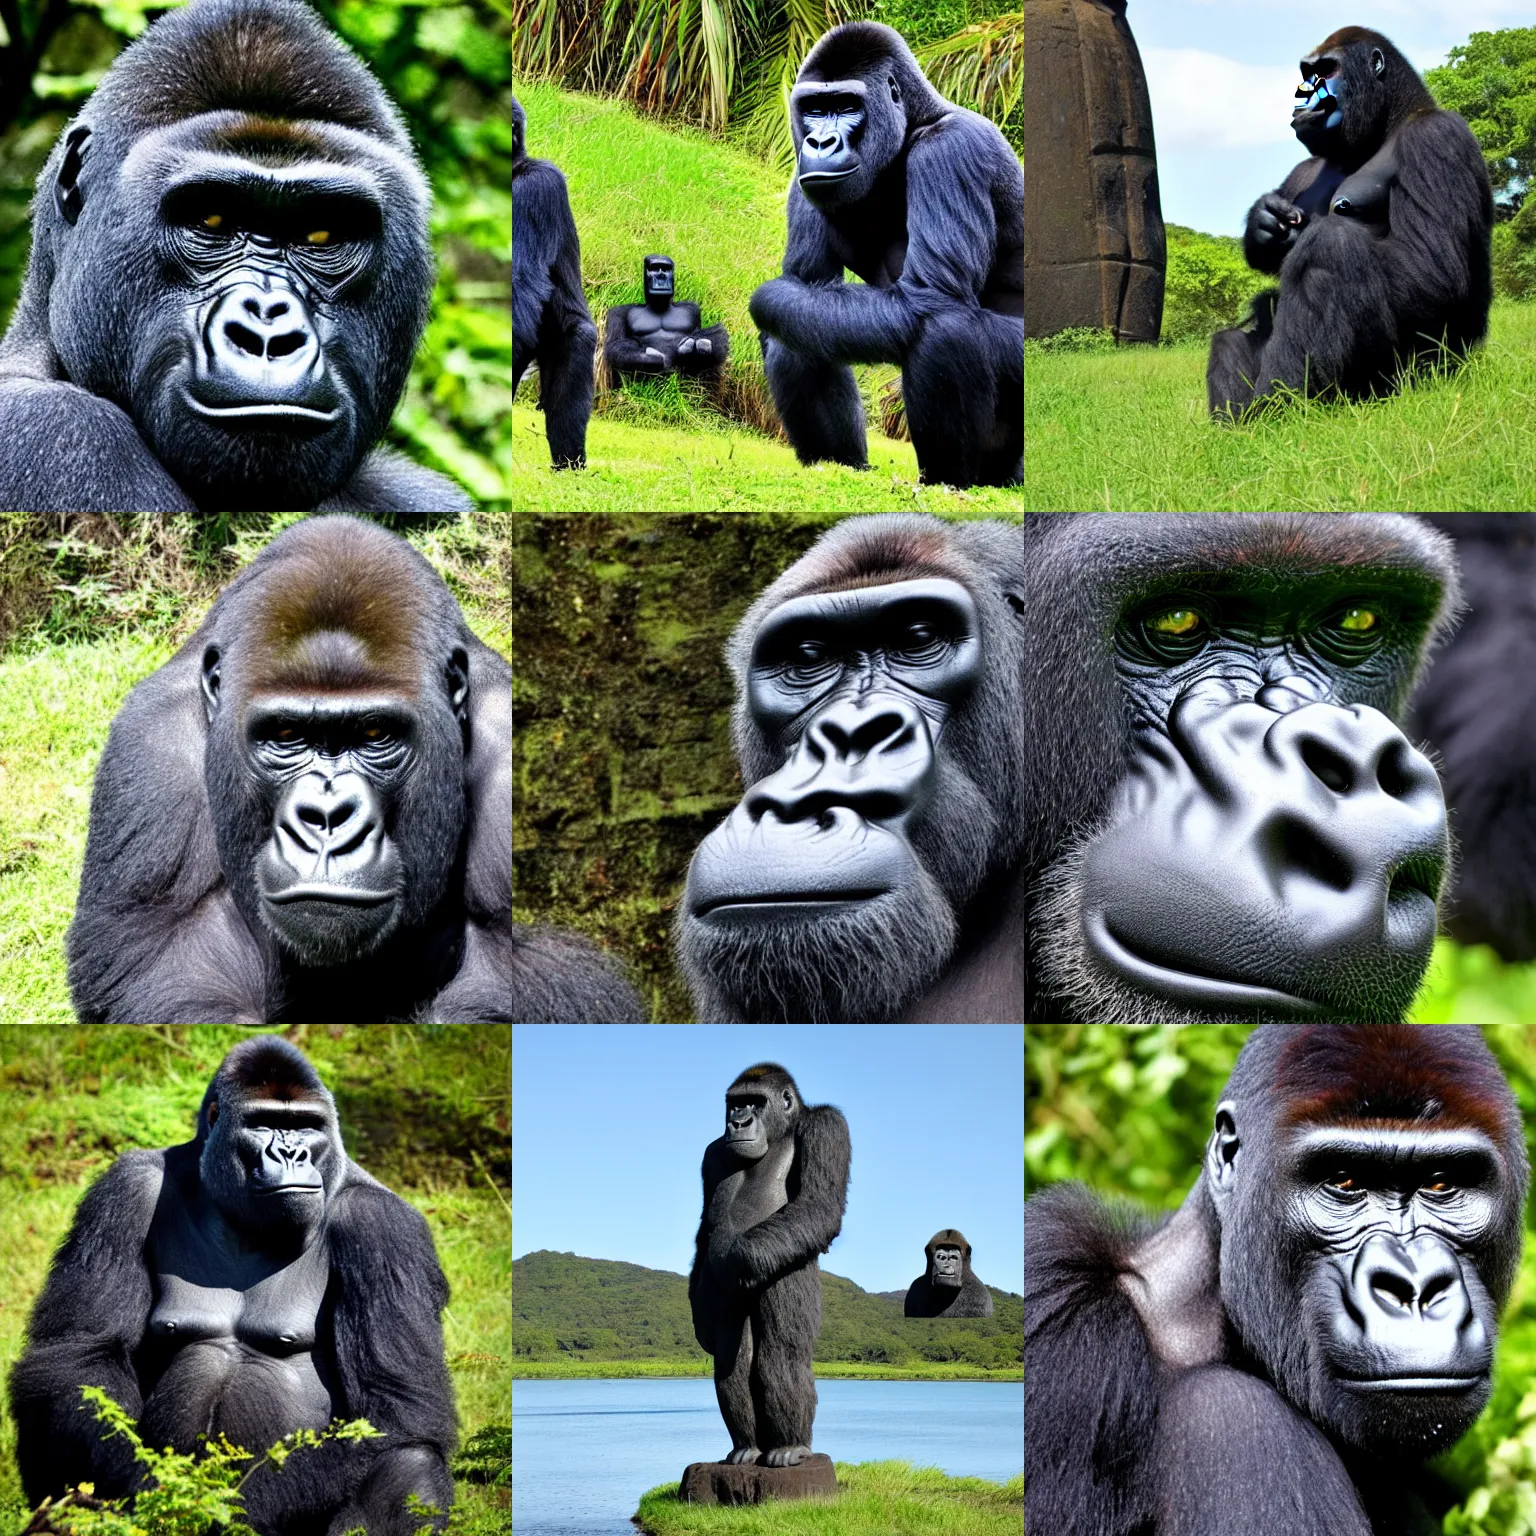 Prompt: moai gorilla